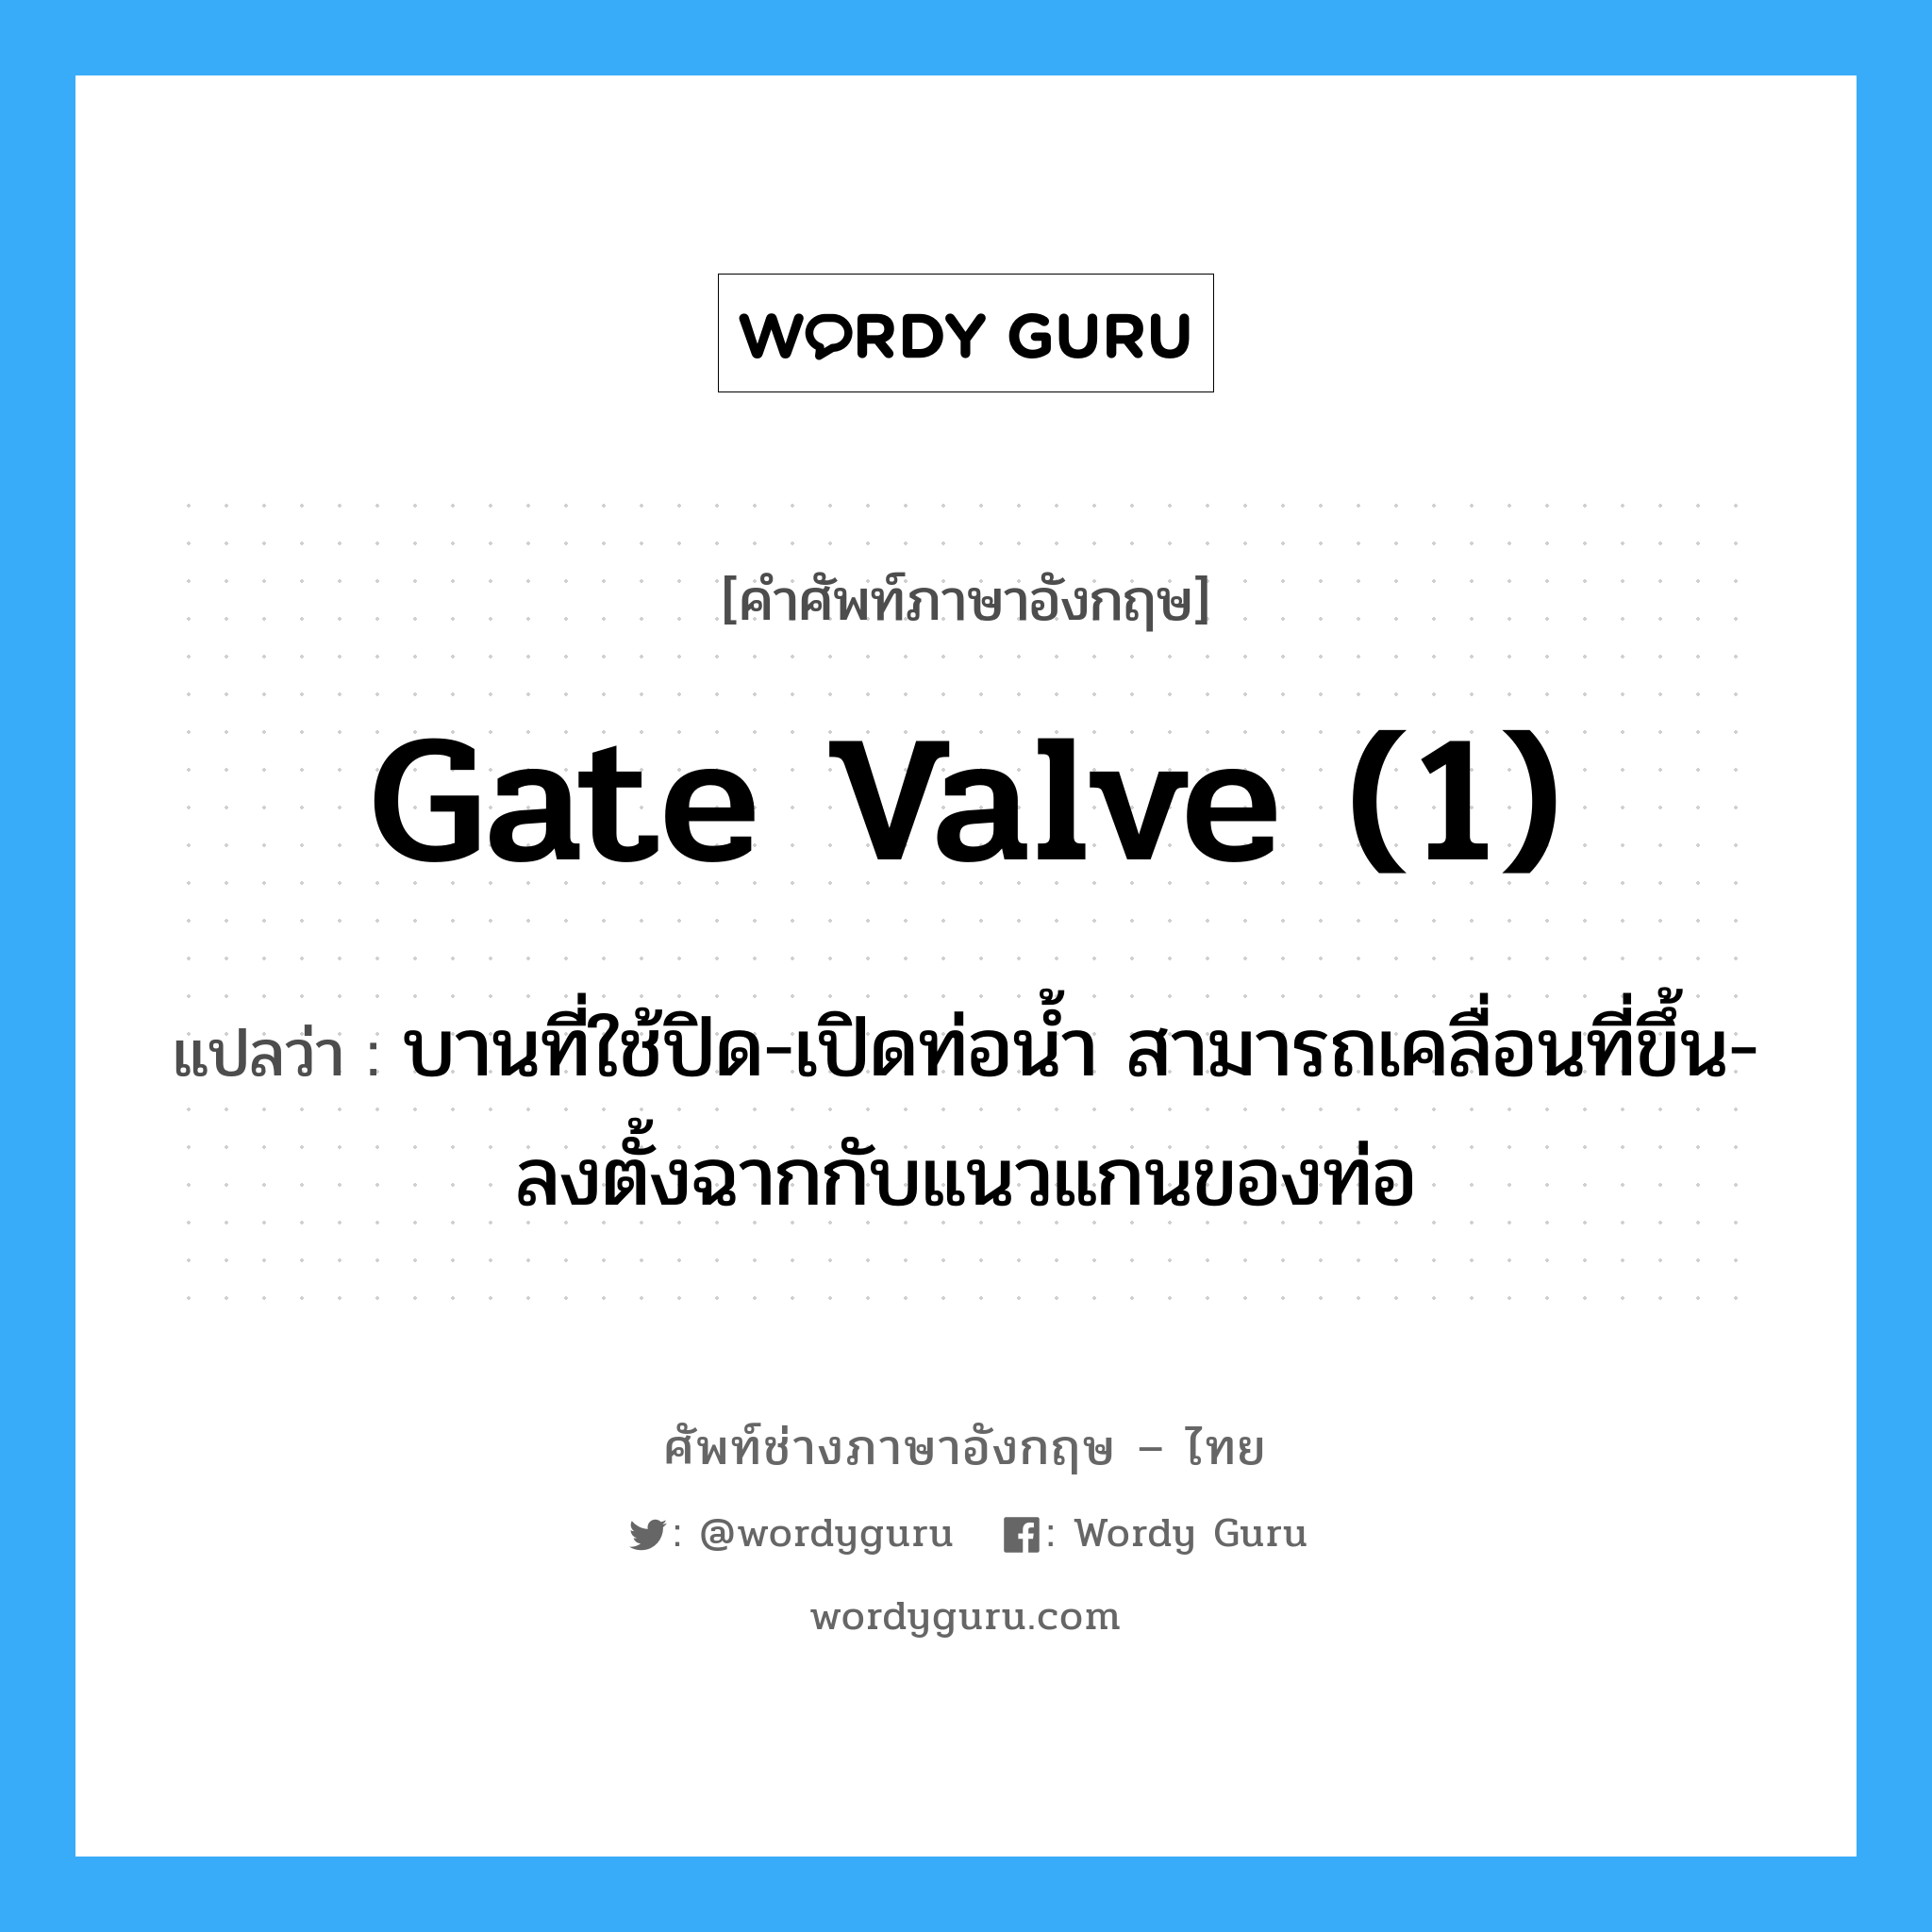 gate valve (1) แปลว่า?, คำศัพท์ช่างภาษาอังกฤษ - ไทย gate valve (1) คำศัพท์ภาษาอังกฤษ gate valve (1) แปลว่า บานที่ใช้ปิด-เปิดท่อน้ำ สามารถเคลื่อนที่ขึ้น-ลงตั้งฉากกับแนวแกนของท่อ